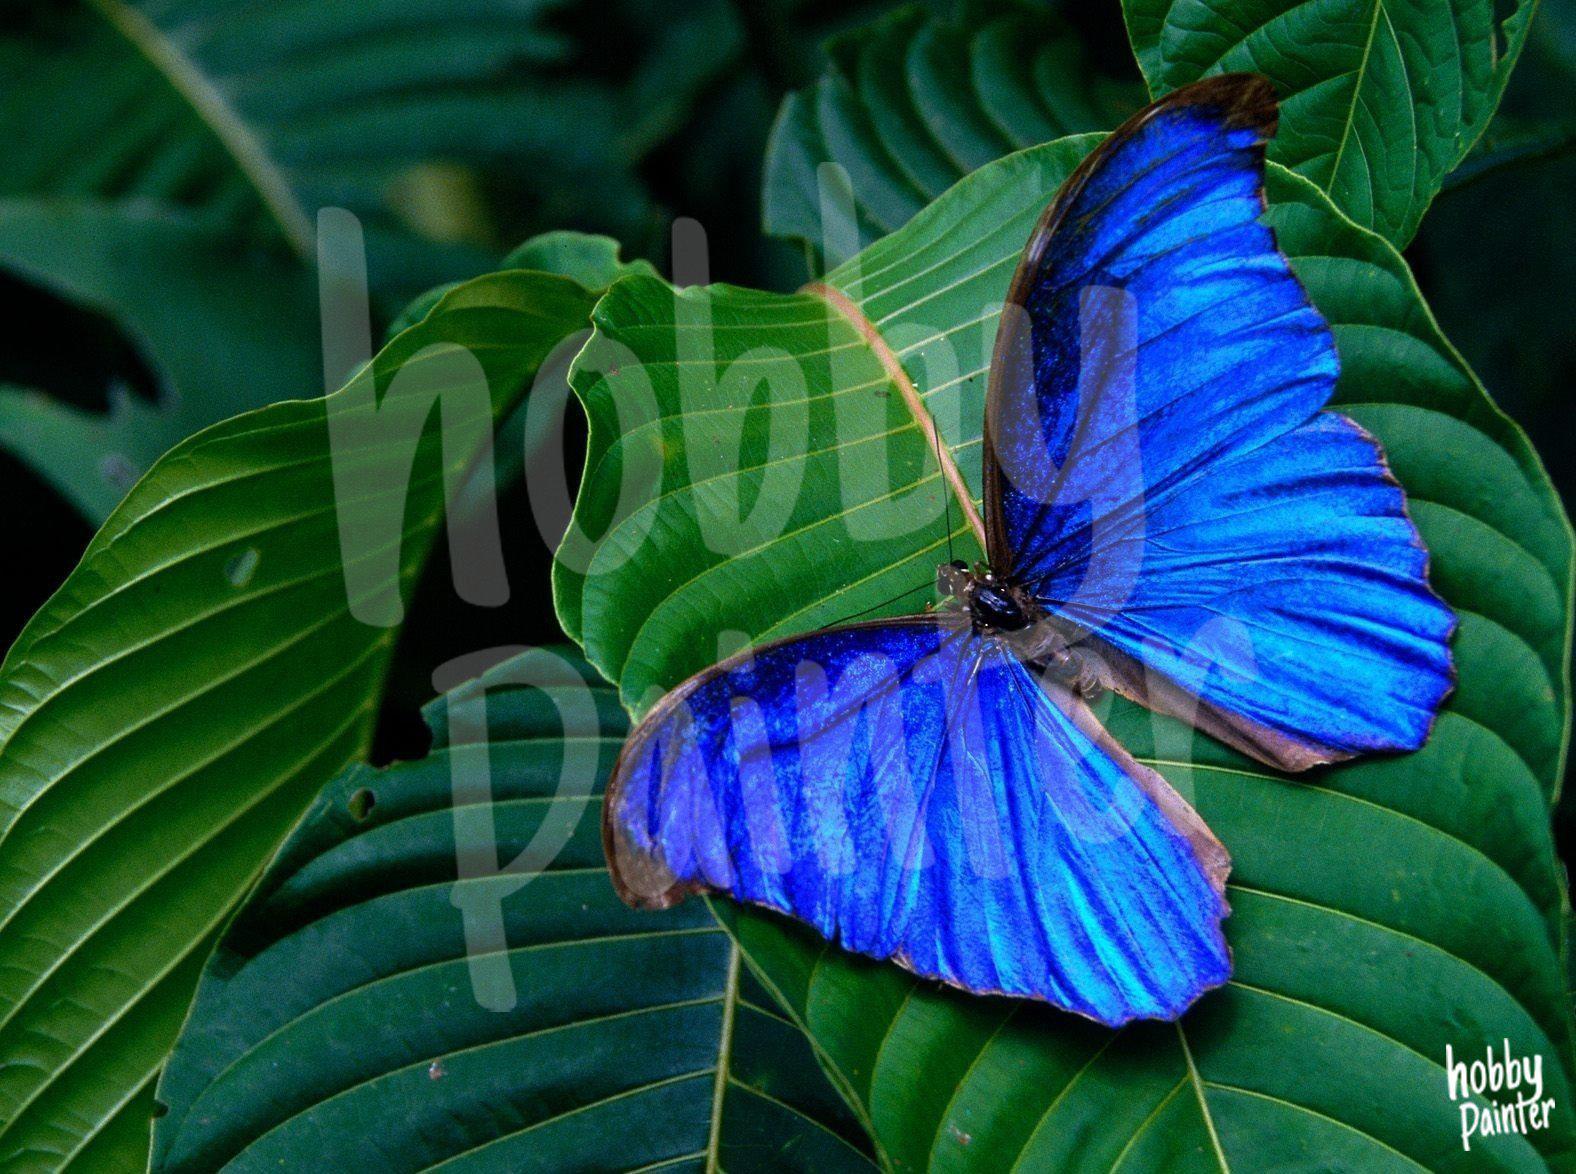 Diamond Painting Blauwe vlinder voorbeeld Hobby Painter